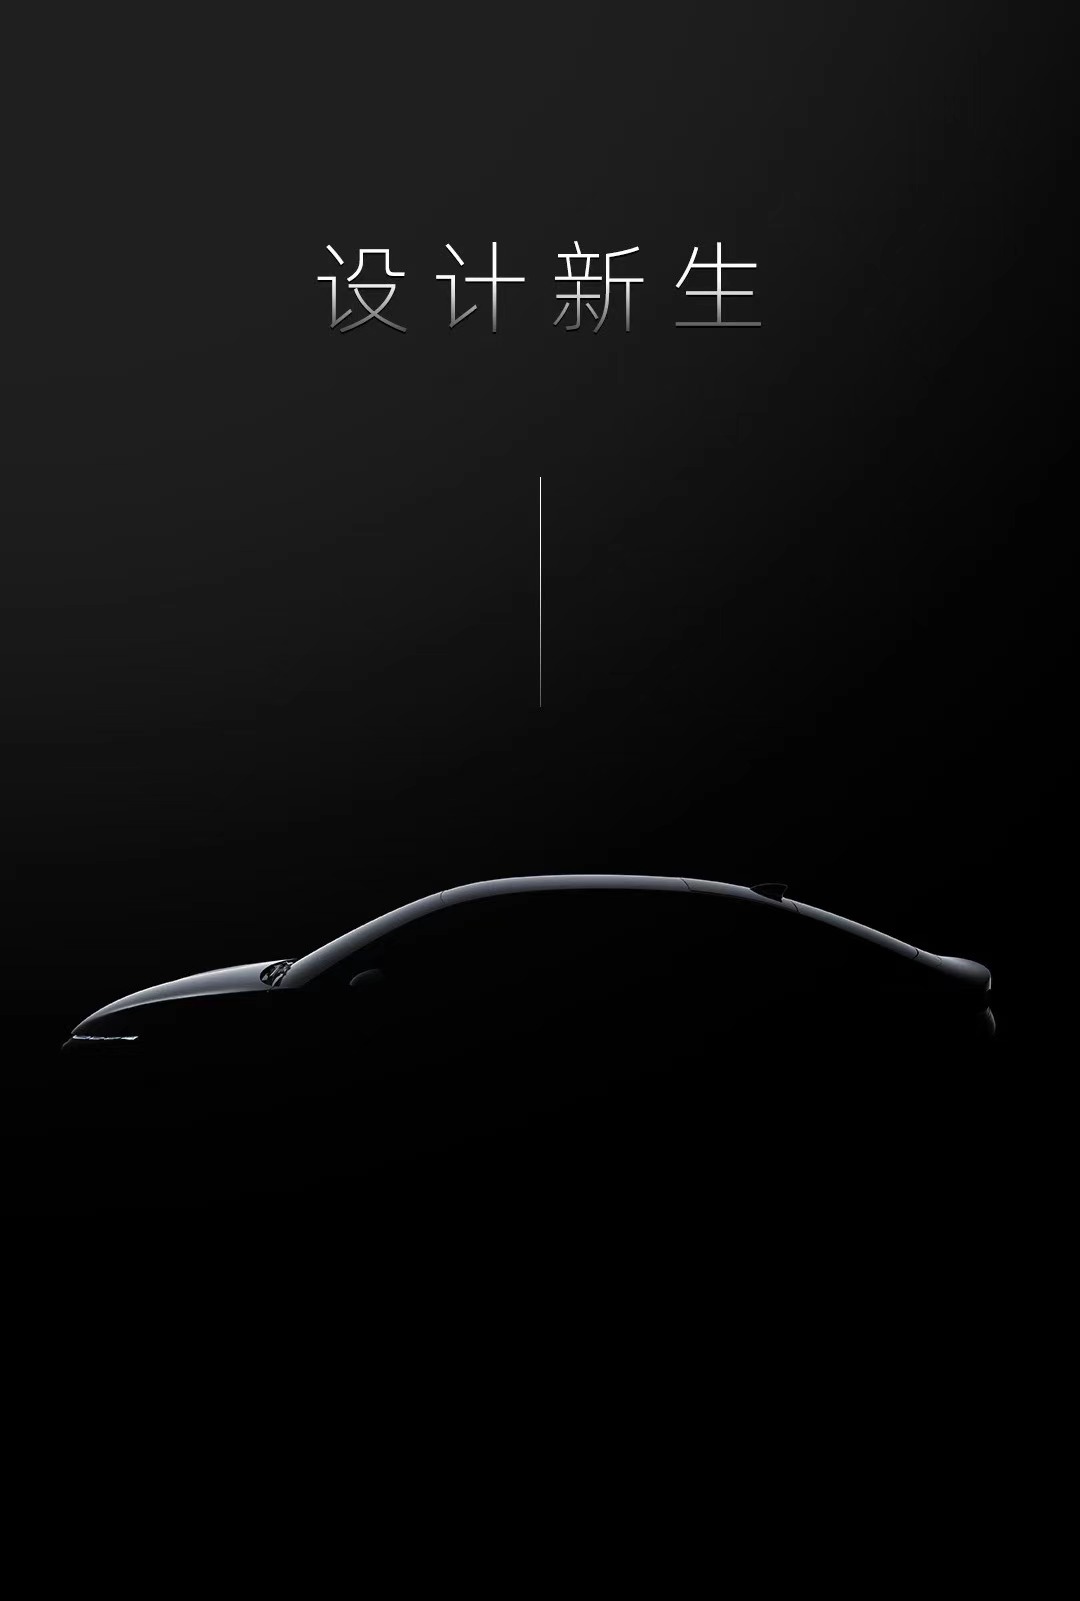 何小鹏：小鹏汽车第三款车将在2021年揭开面纱和交付